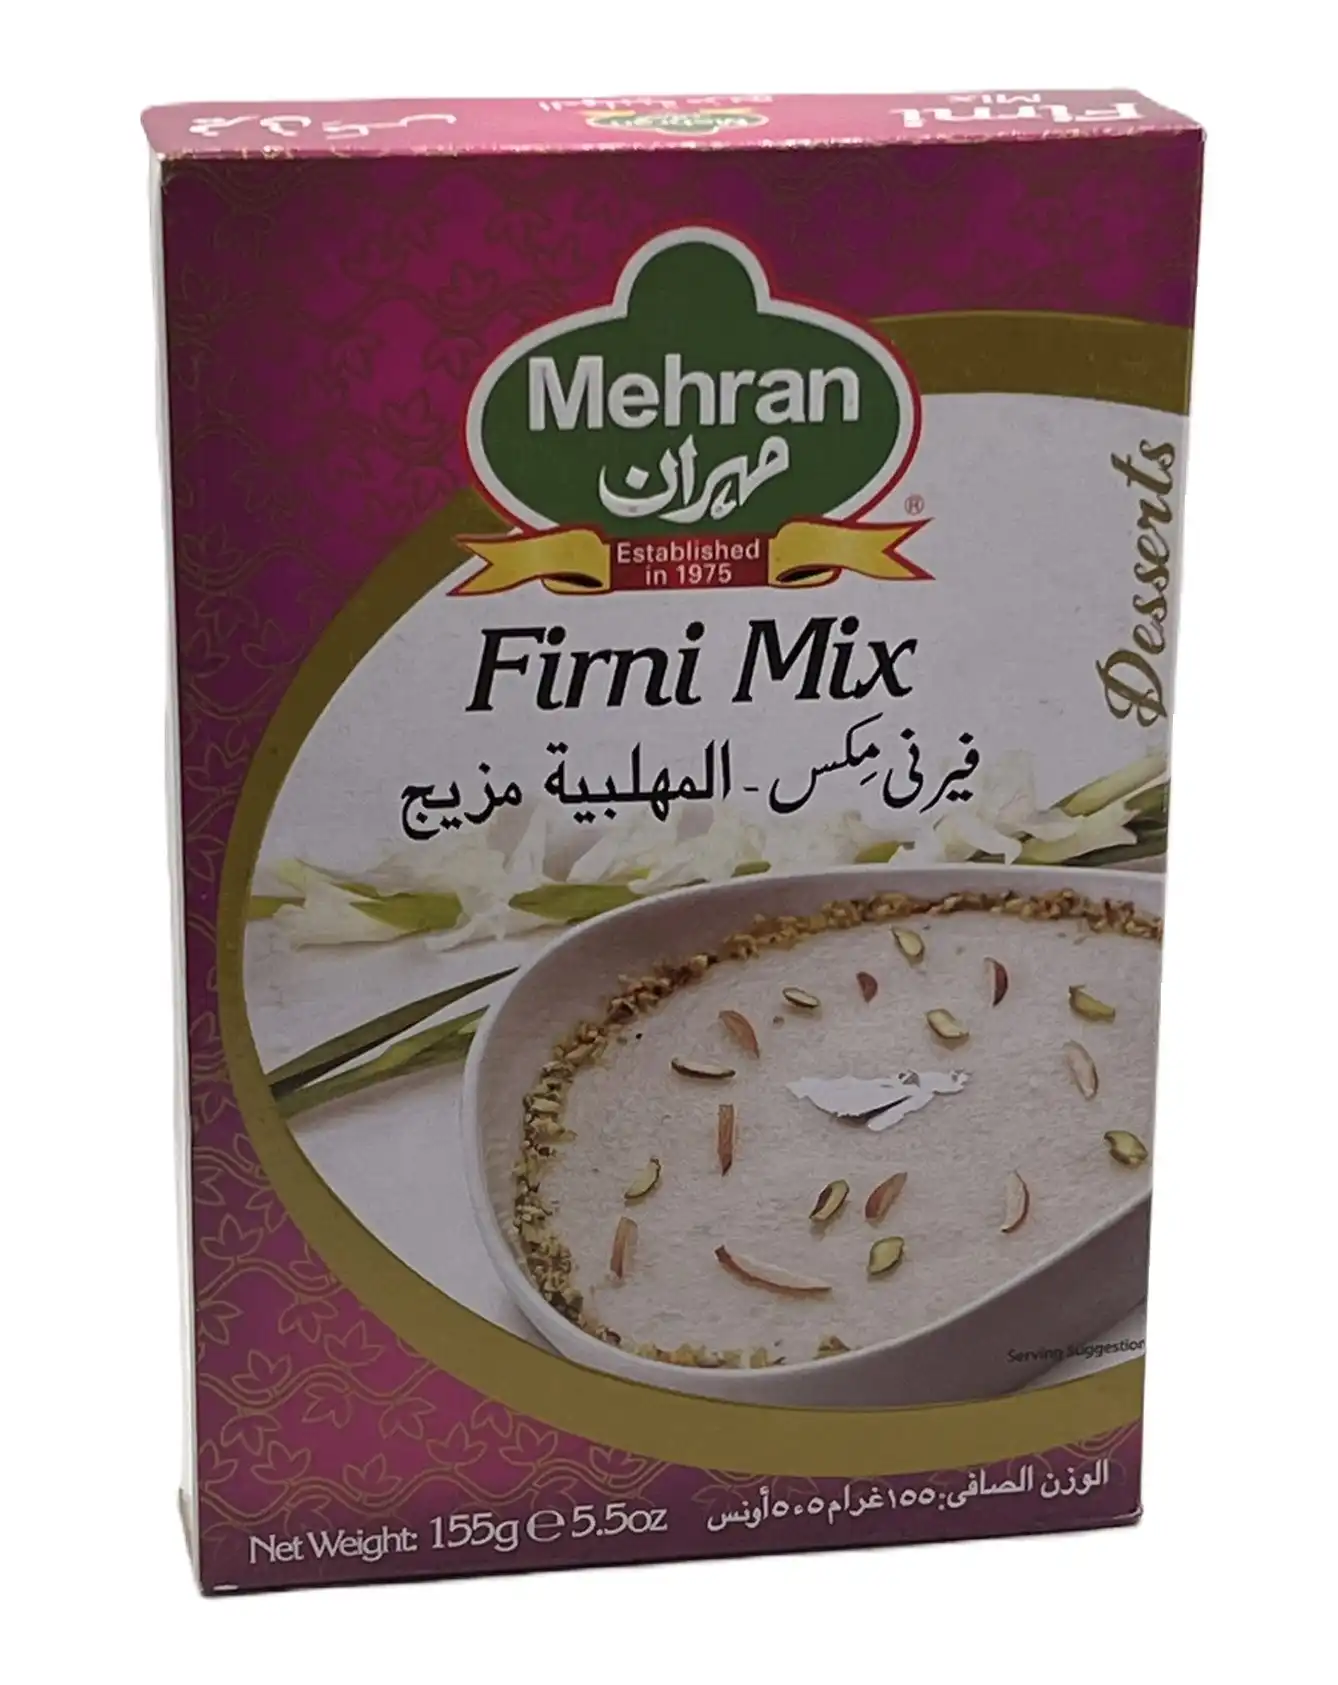 firni mix -mehran